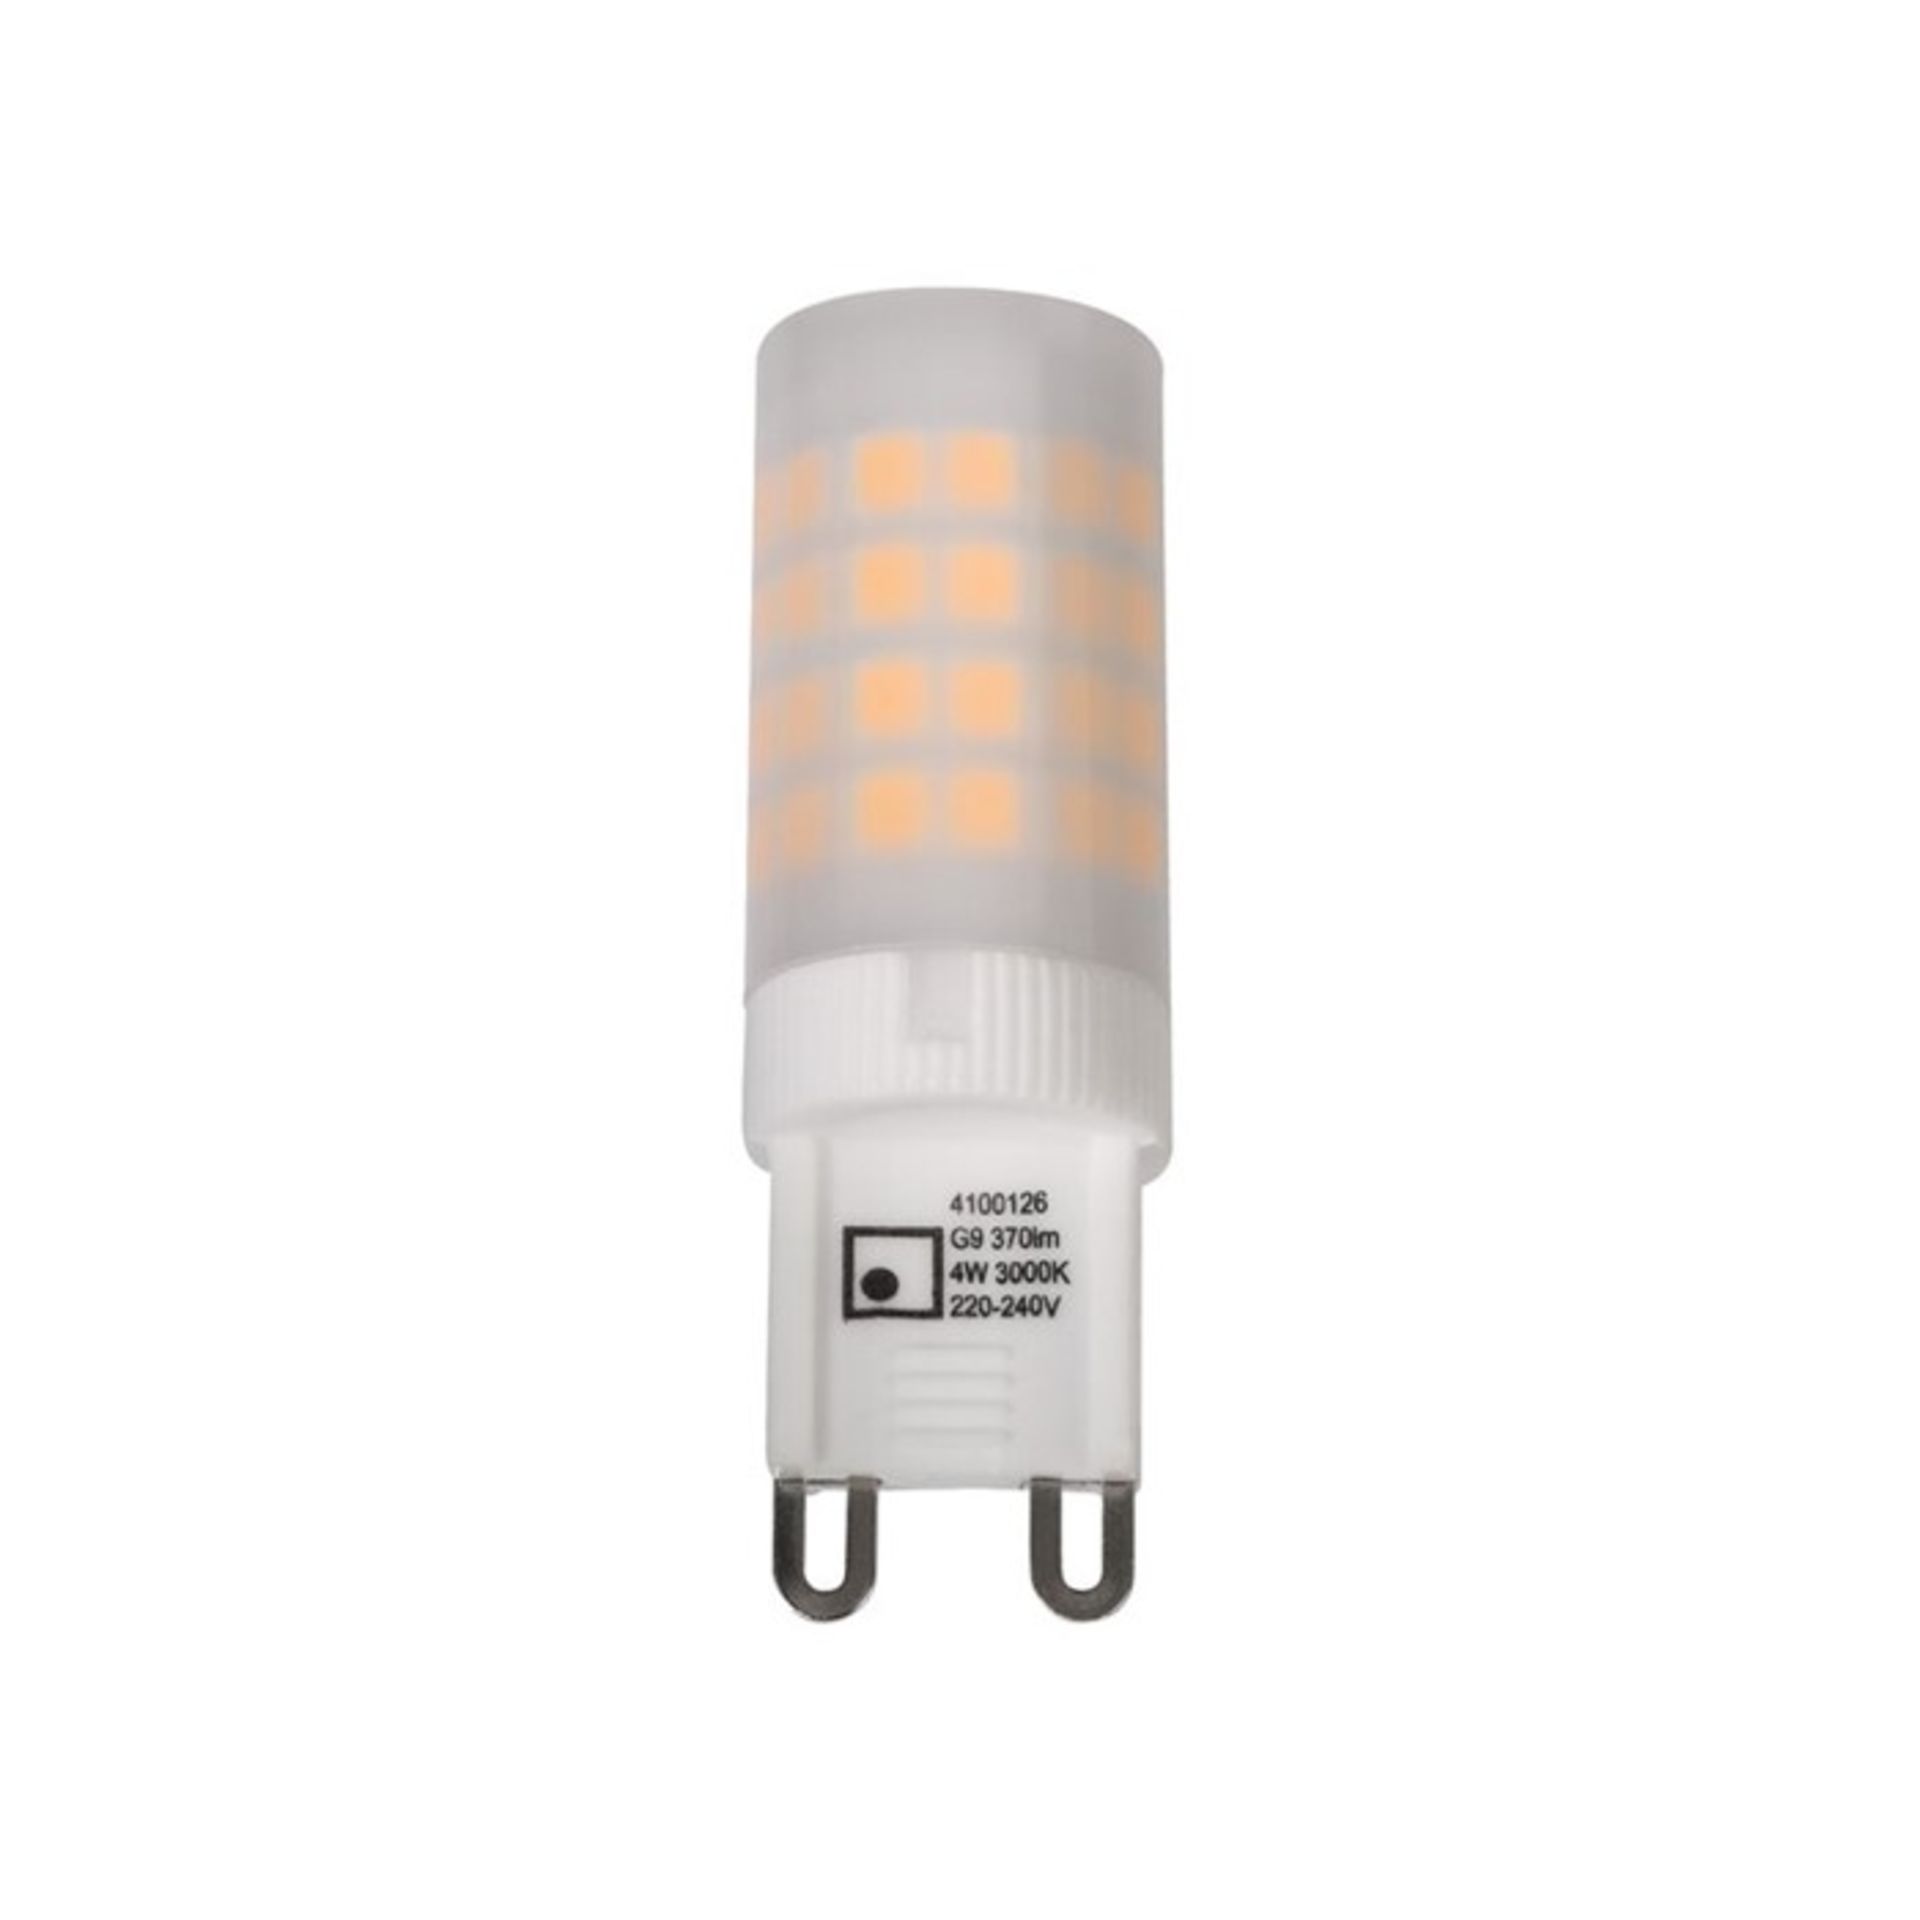 Symple Stuff, Detrick 4W G9 LED Capsule Light Bulb X8 - RRP £26.99 (NAVE4861 - 18337/22) 6E